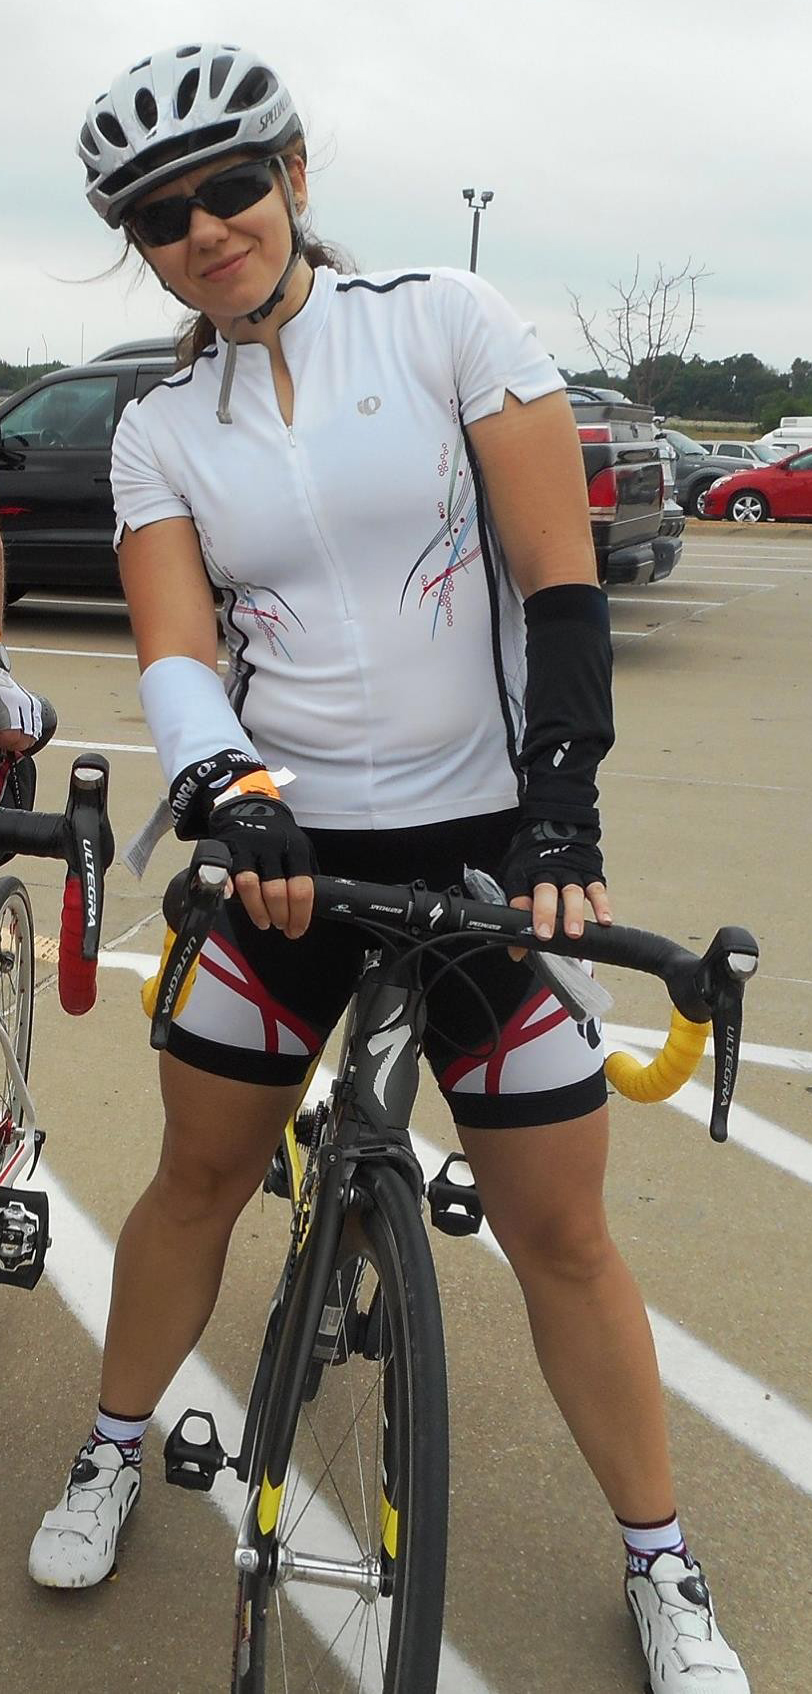 Teresa pronta per una gara ciclistica